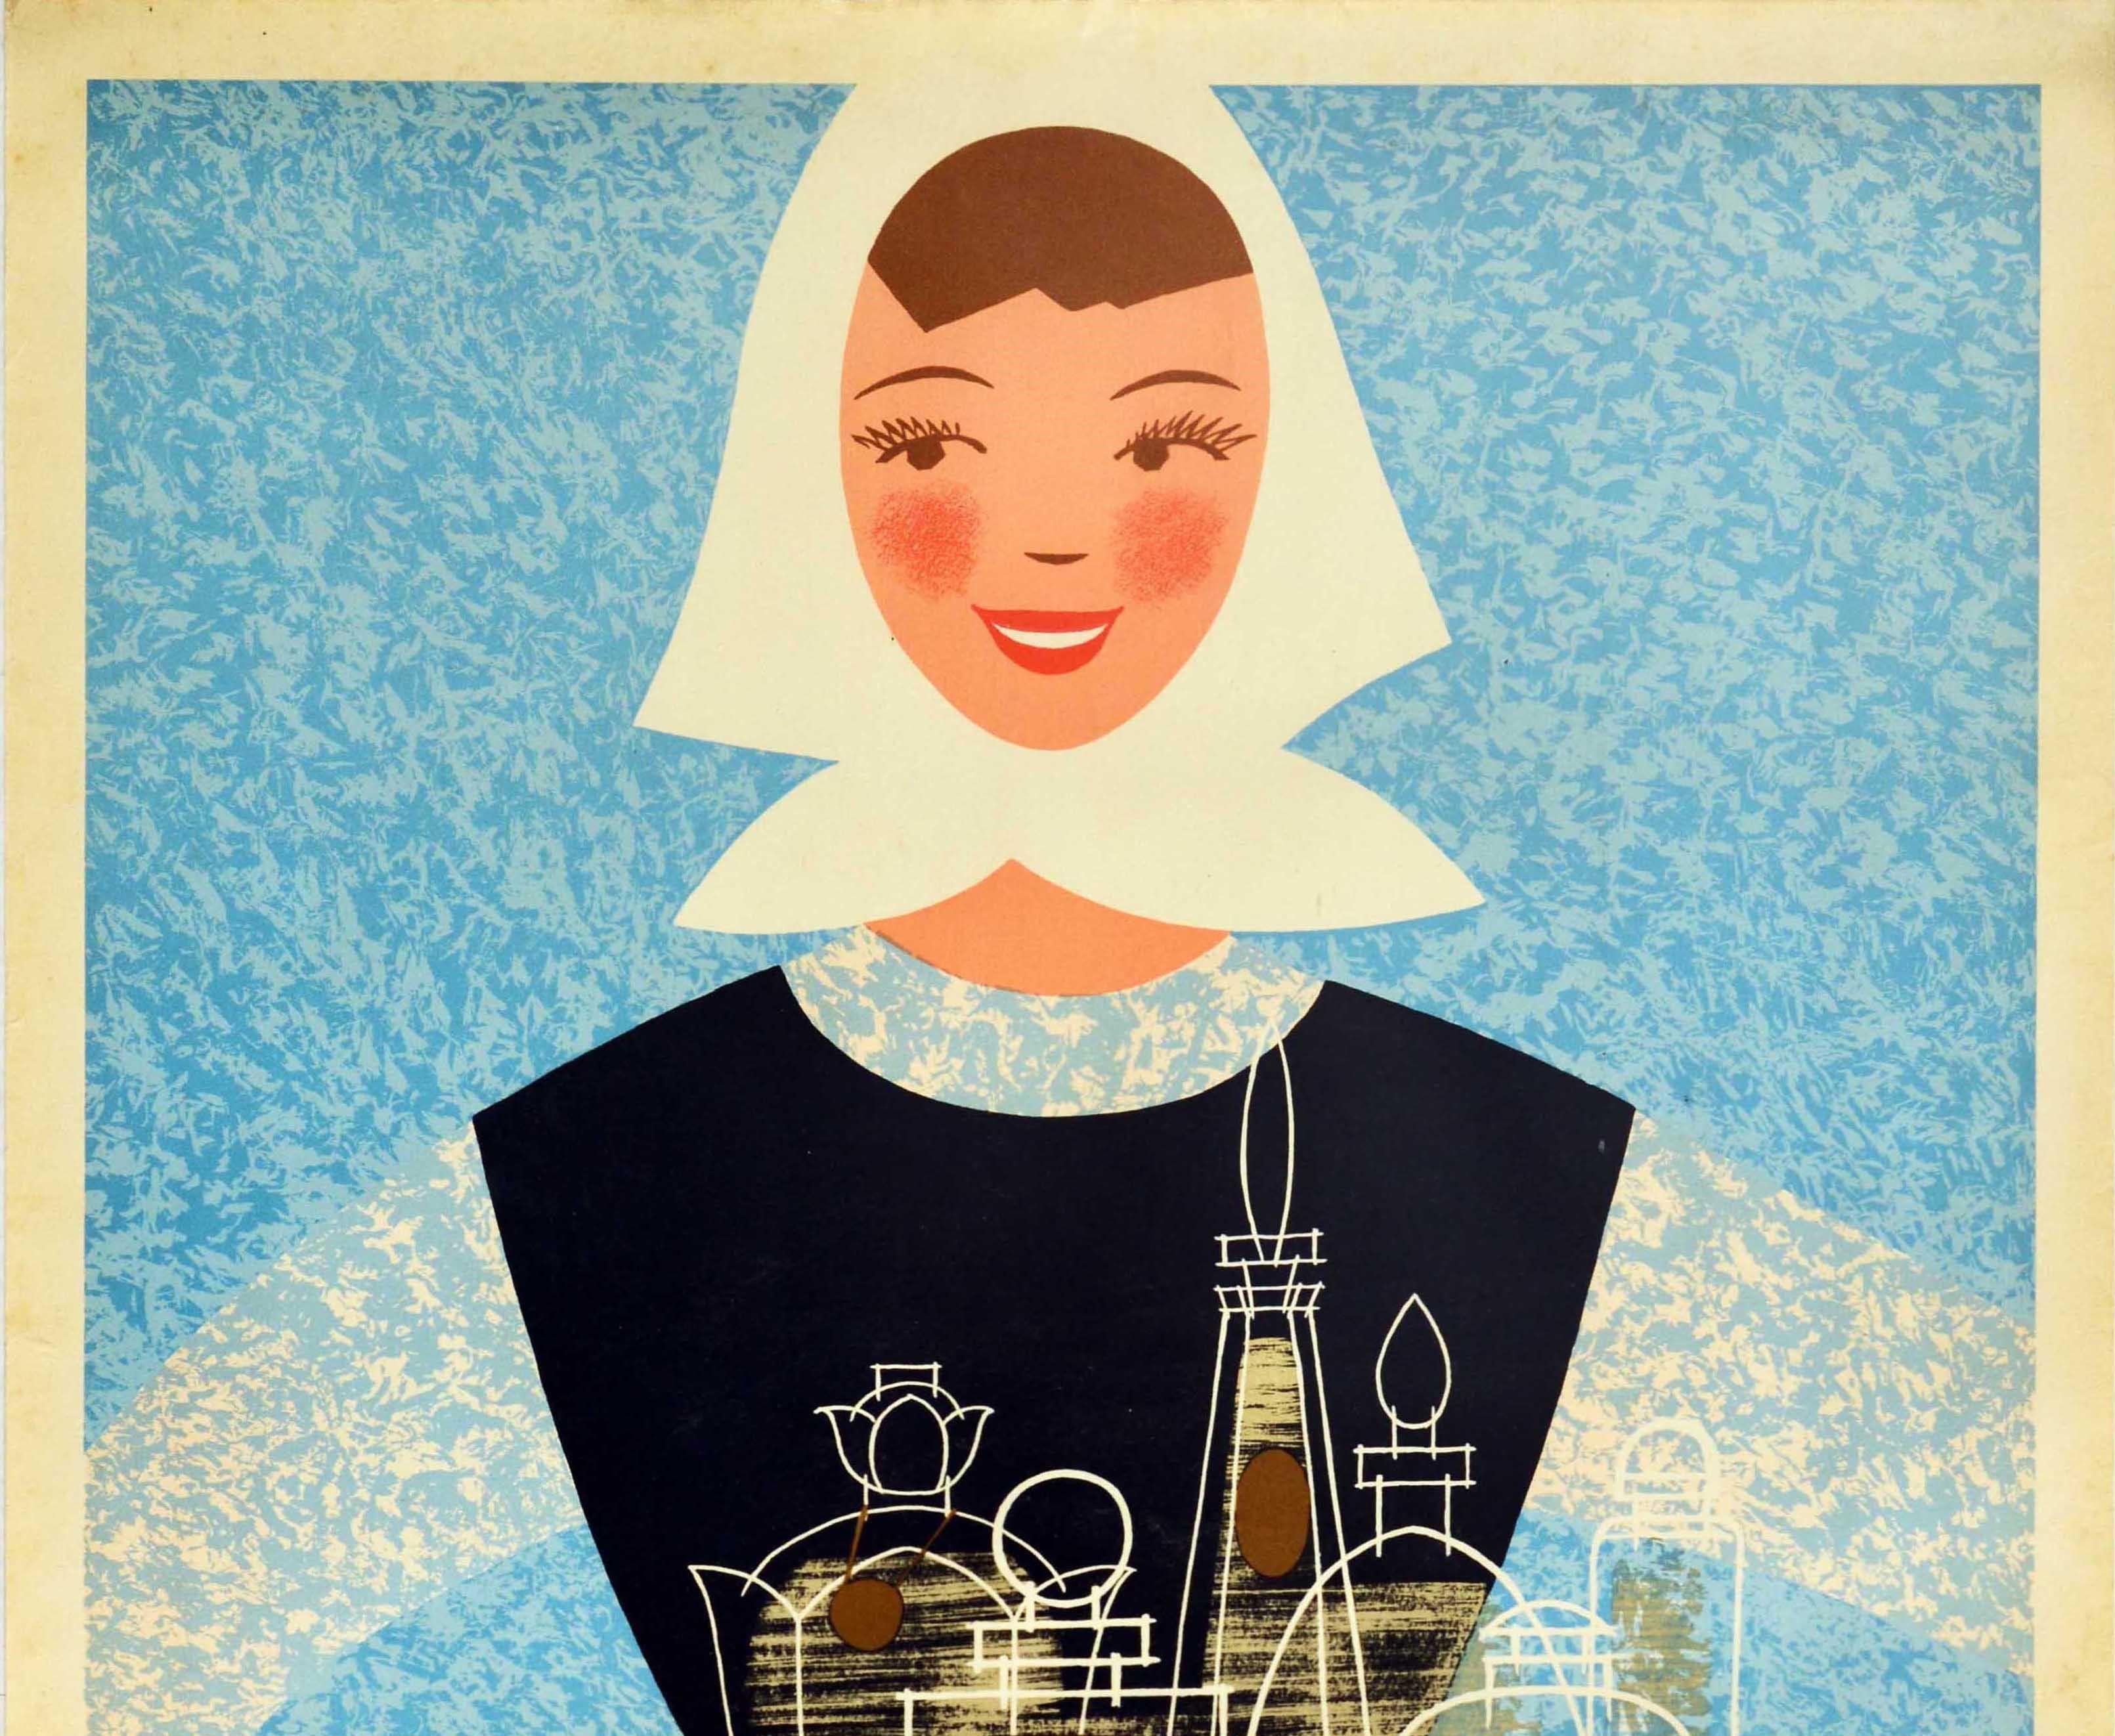 Affiche publicitaire vintage originale - Parfumerie Sojuzchimexport Moscou - représentant une jeune femme souriante vêtue d'un haut bleu et blanc, d'une jupe marron et d'un foulard blanc, tenant un chiffon sur lequel sont posés des pots de parfum en